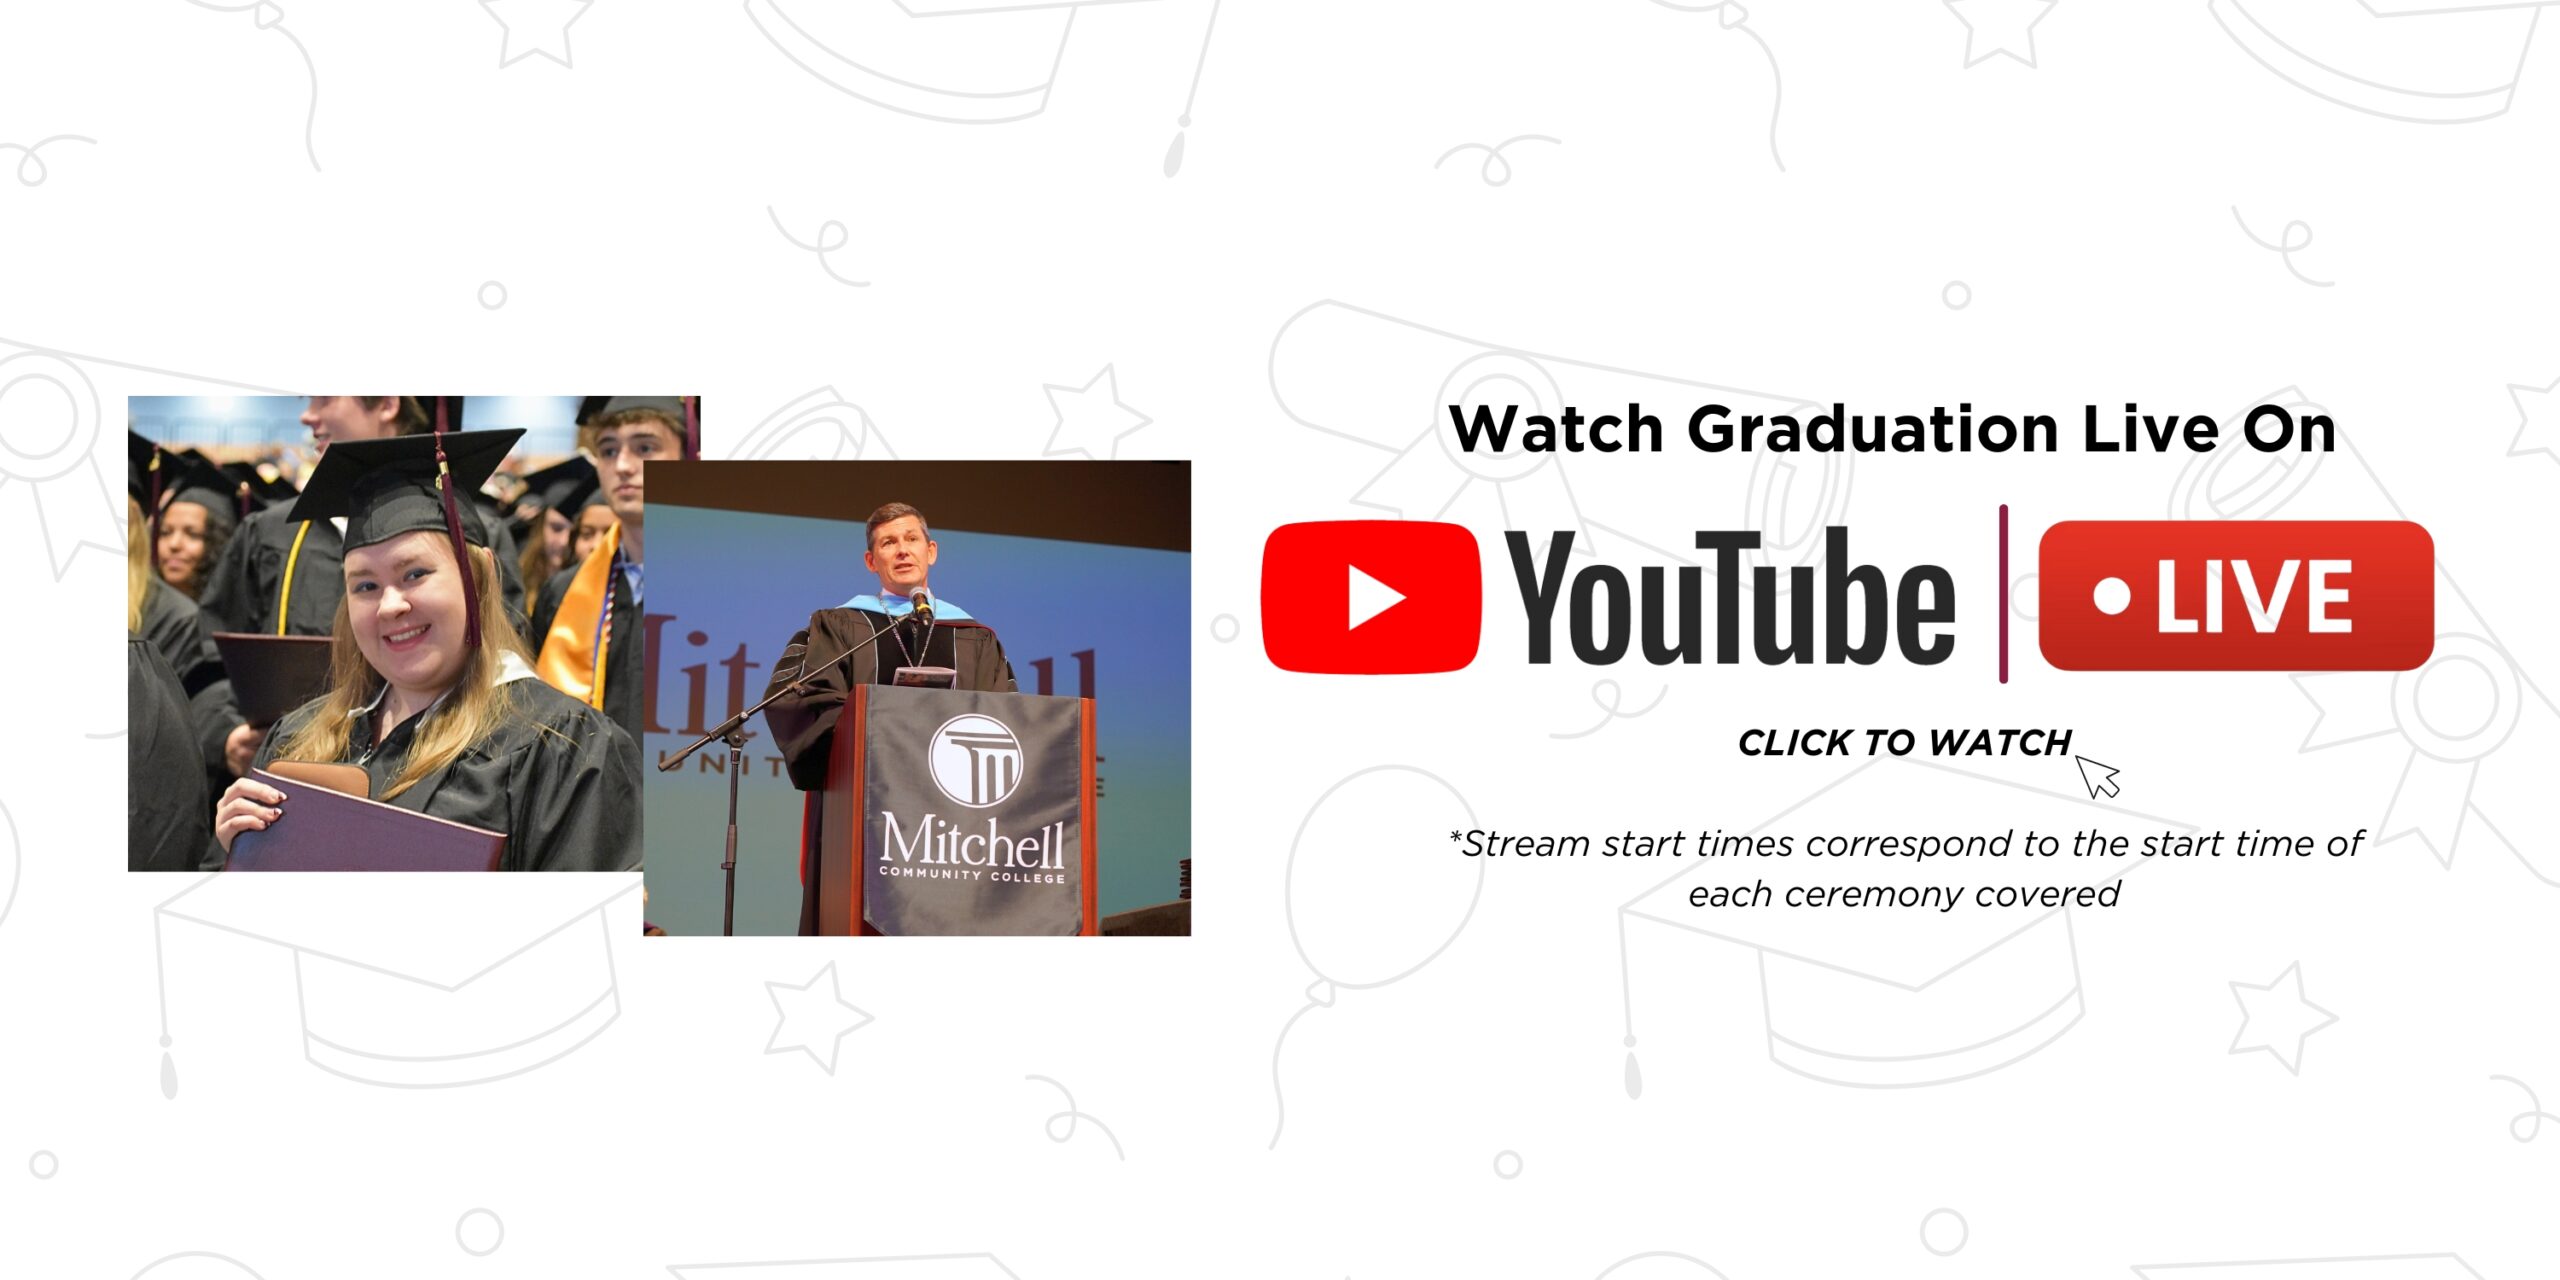 「YouTube で卒業ライブを視聴 | クリックして視聴 | *ストリームの開始時間は、対象となる各式典の開始時間に対応しています」と書かれたバナー。クリックしてミッチェル YouTube チャンネルにアクセスしてください。